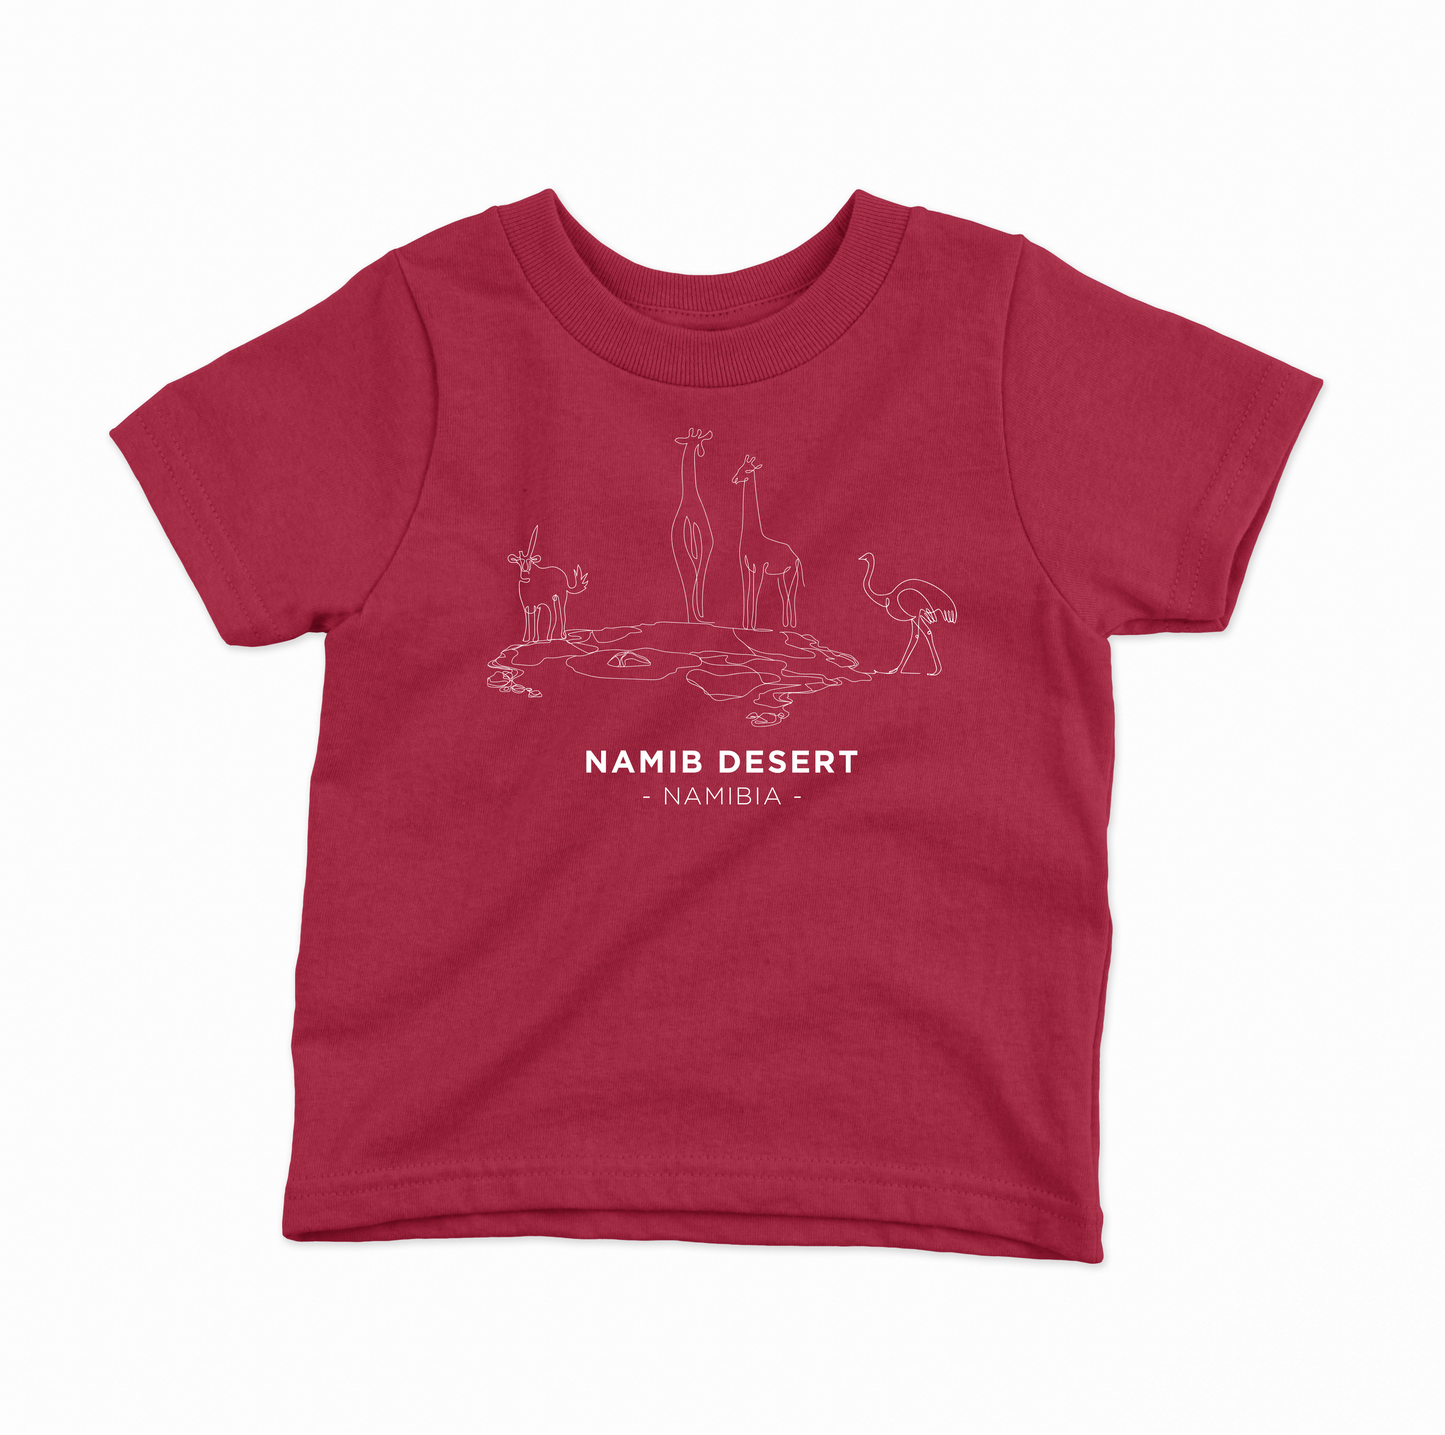 Namib Desert Waterhole T-shirt Kids - Red